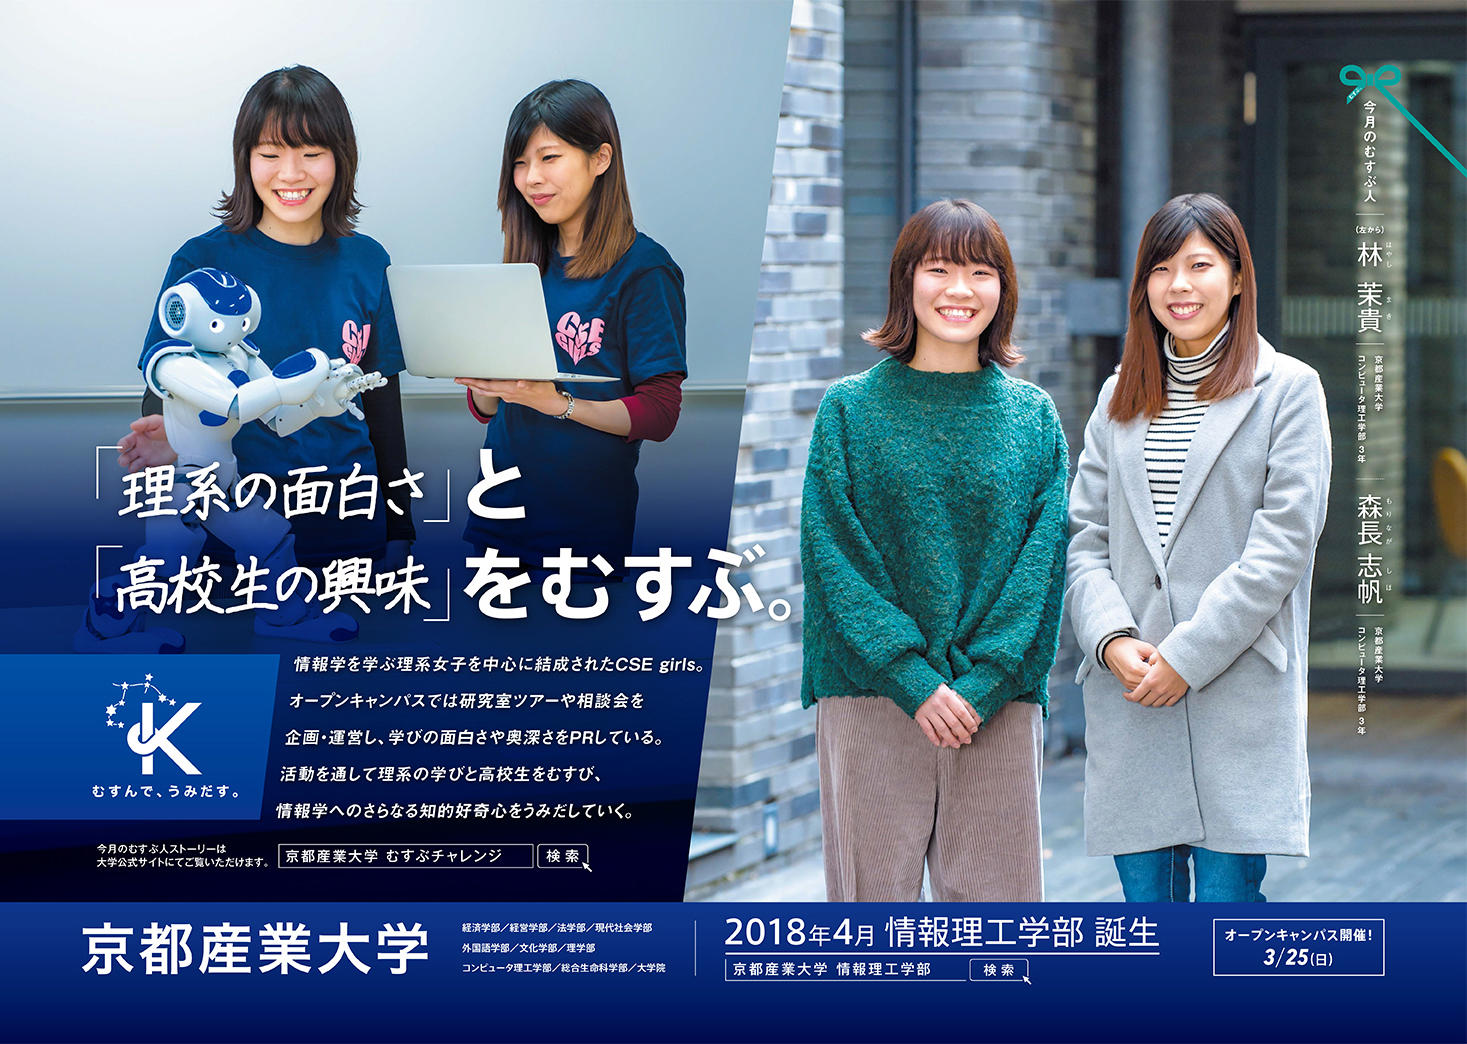 理系女子が高校生に理系の面白さをPR -- 京都産業大学 学生団体「CSE girls」